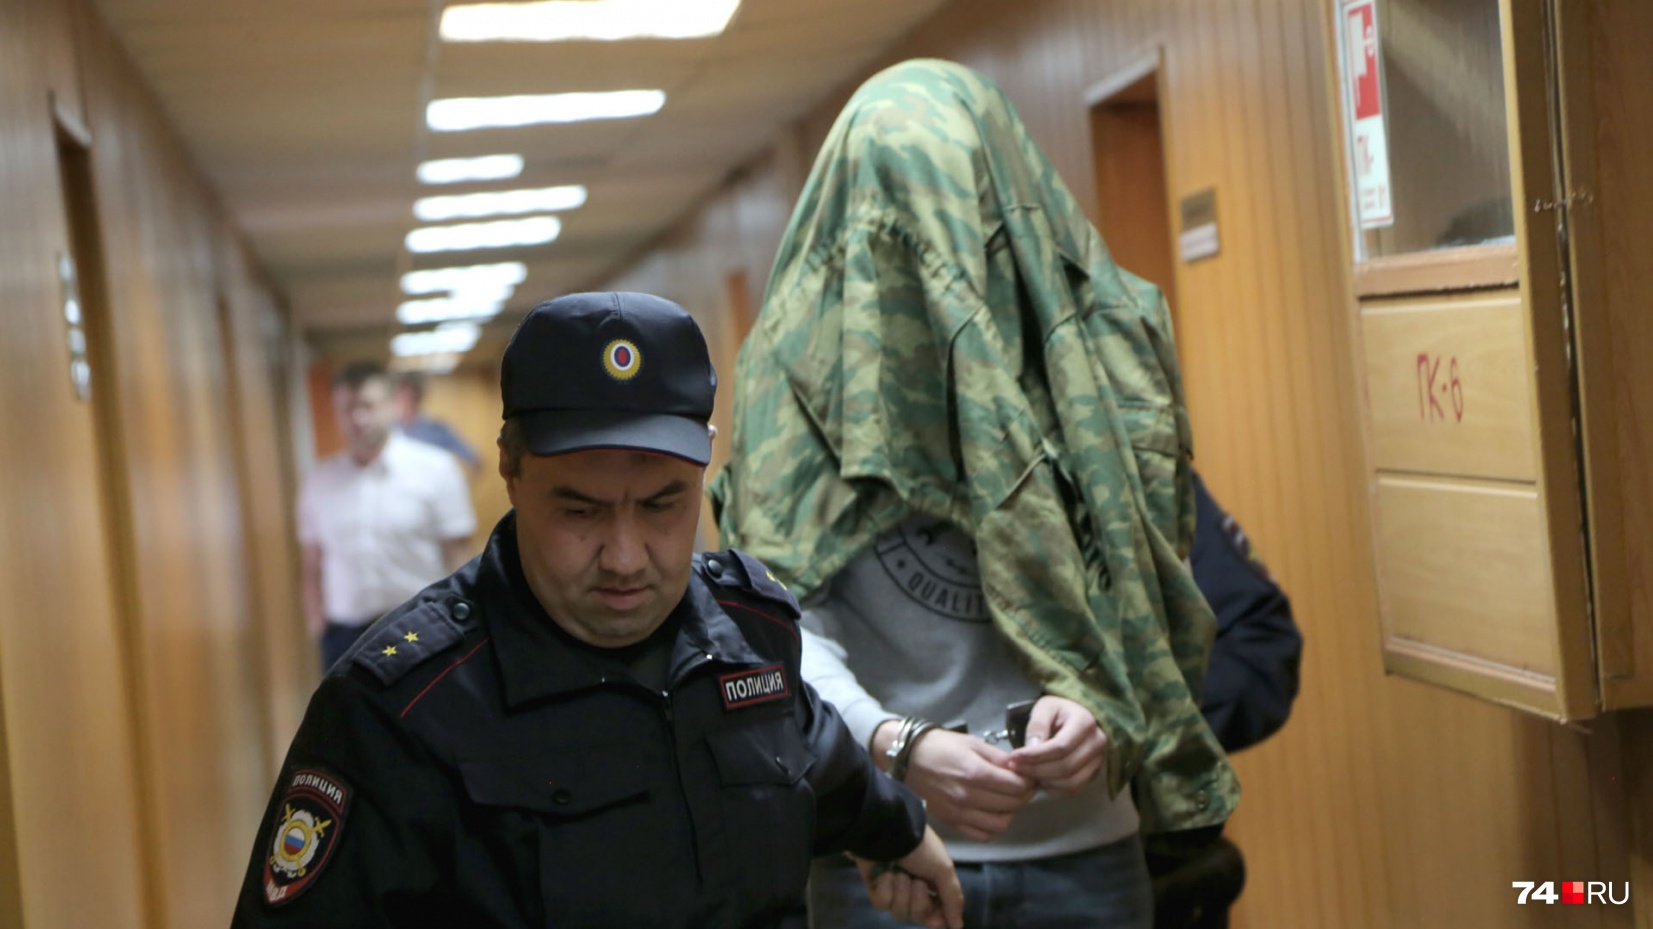 Заседание по аресту куратора группы смерти в суде проходило в закрытом режиме